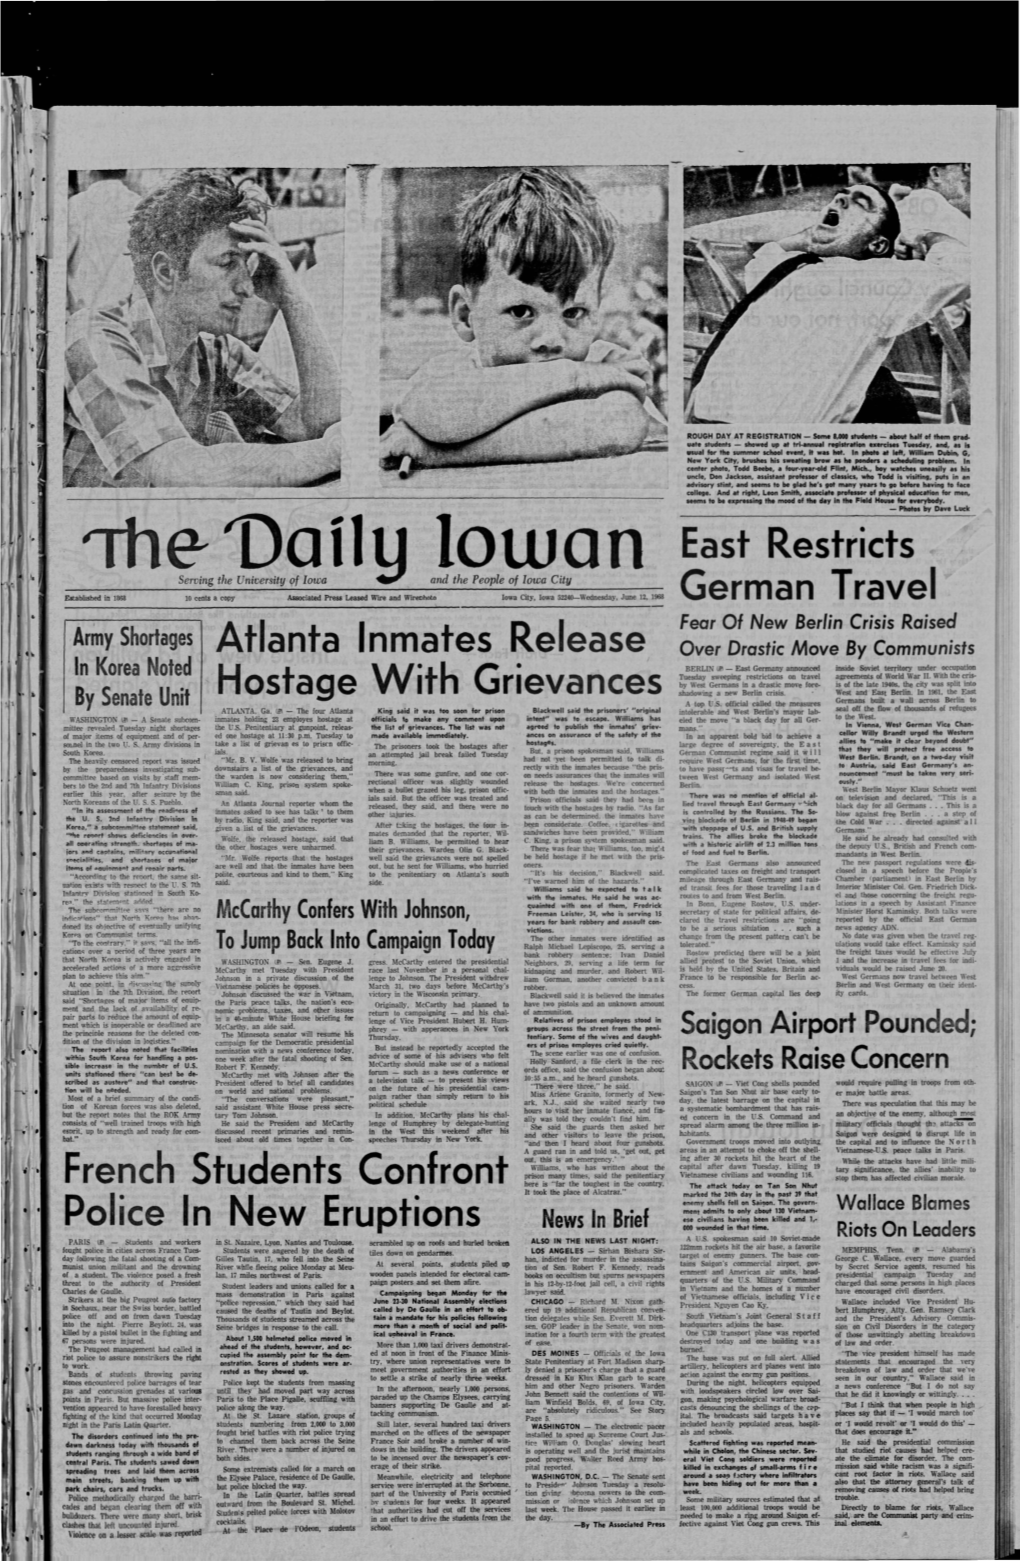 Daily Iowan (Iowa City, Iowa), 1968-06-12